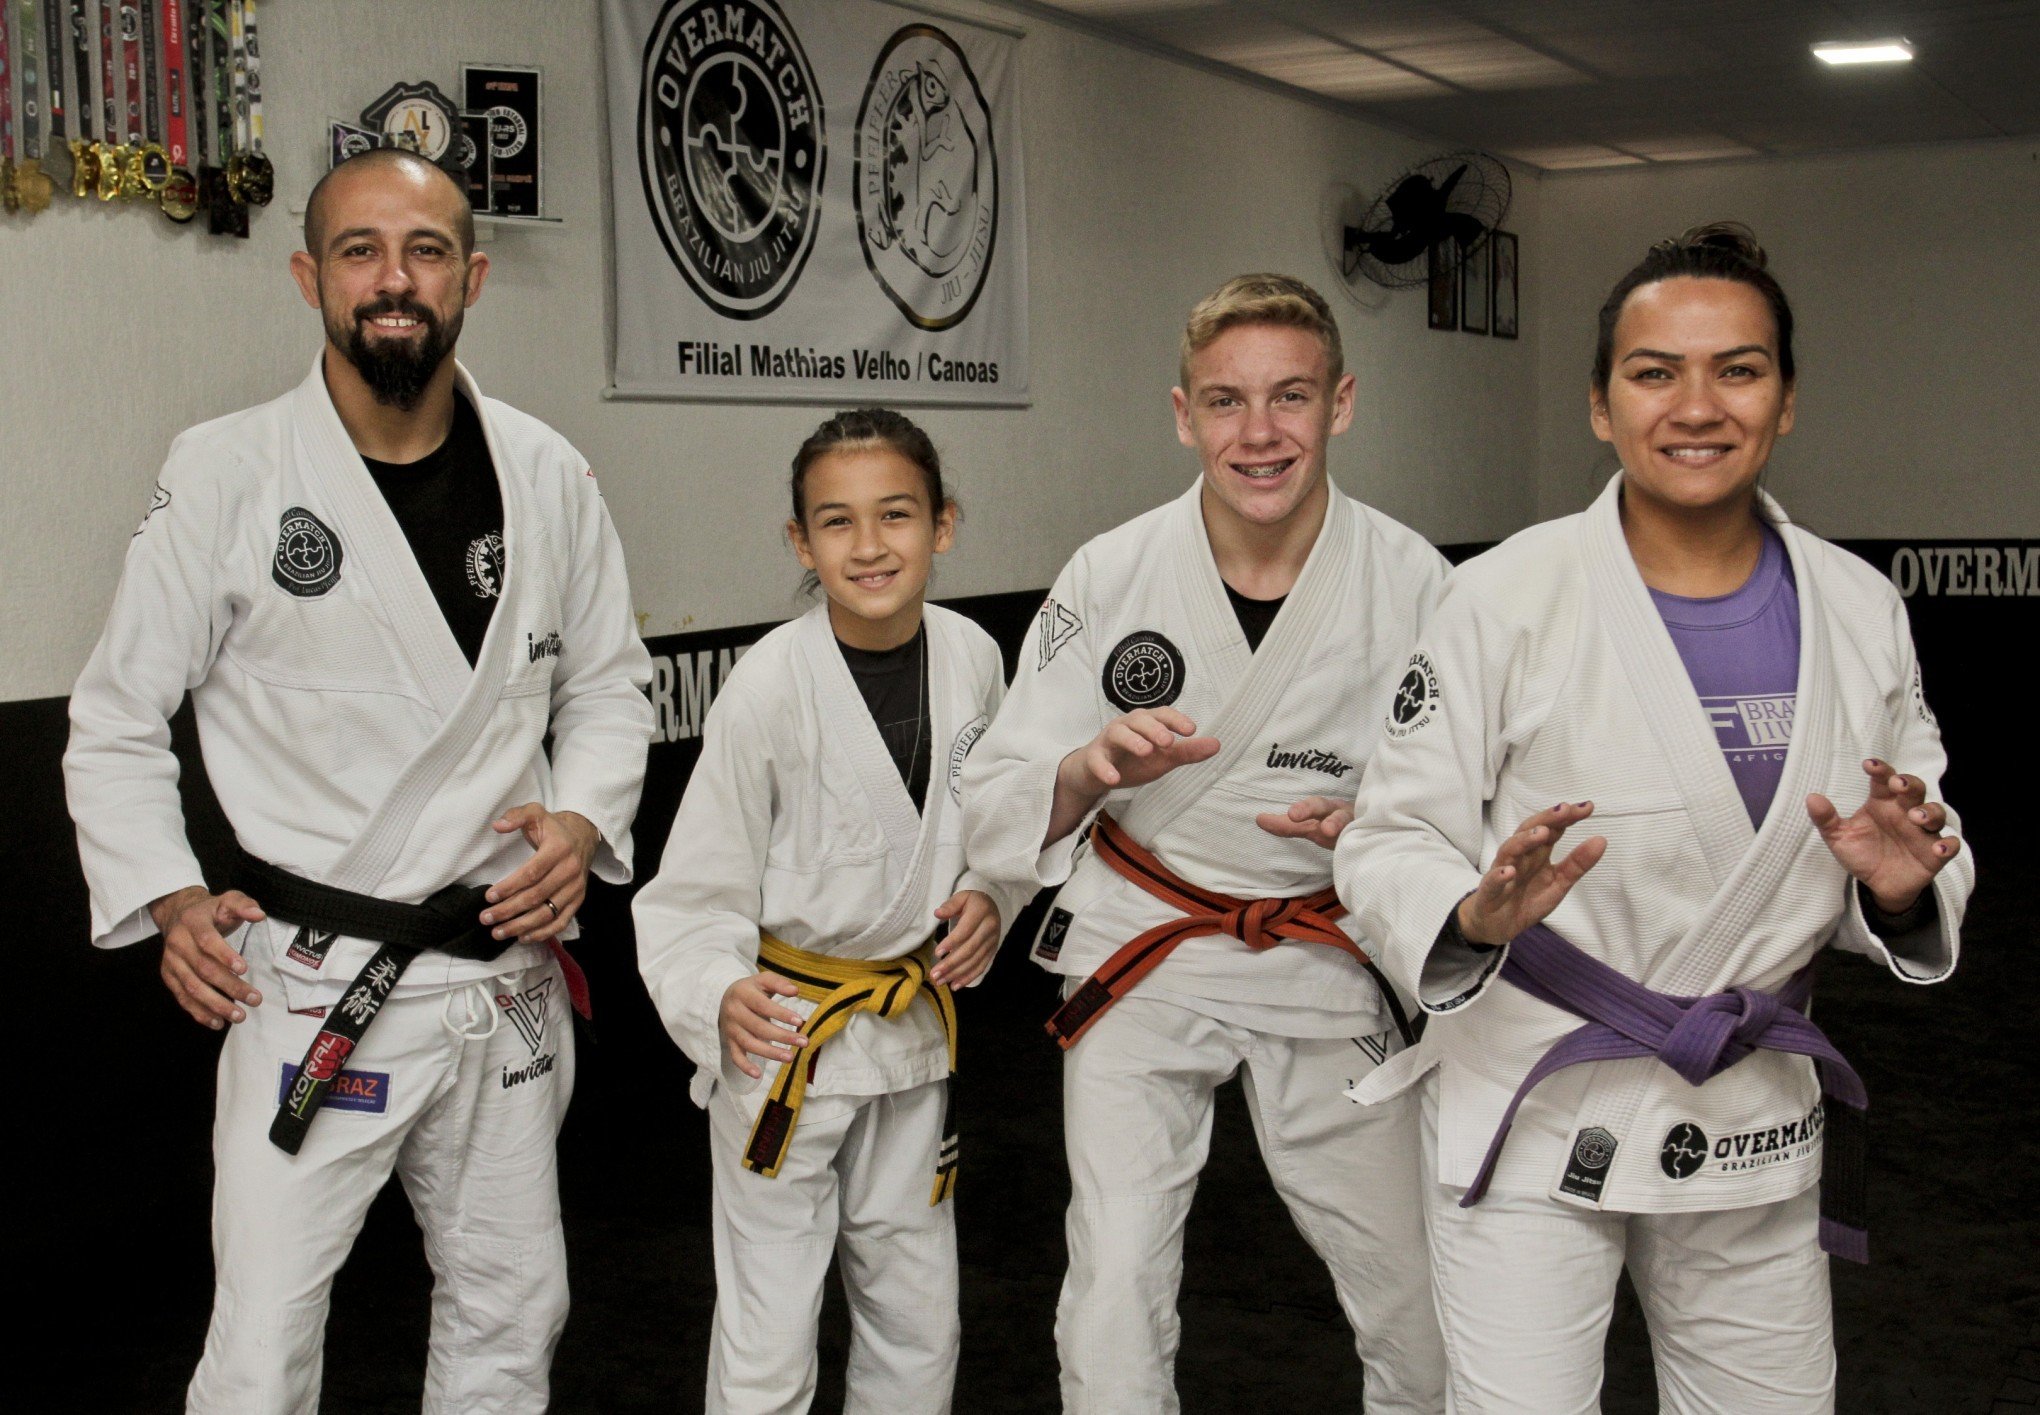 Uma família unida pelo amor ao esporte jiu-jítsu